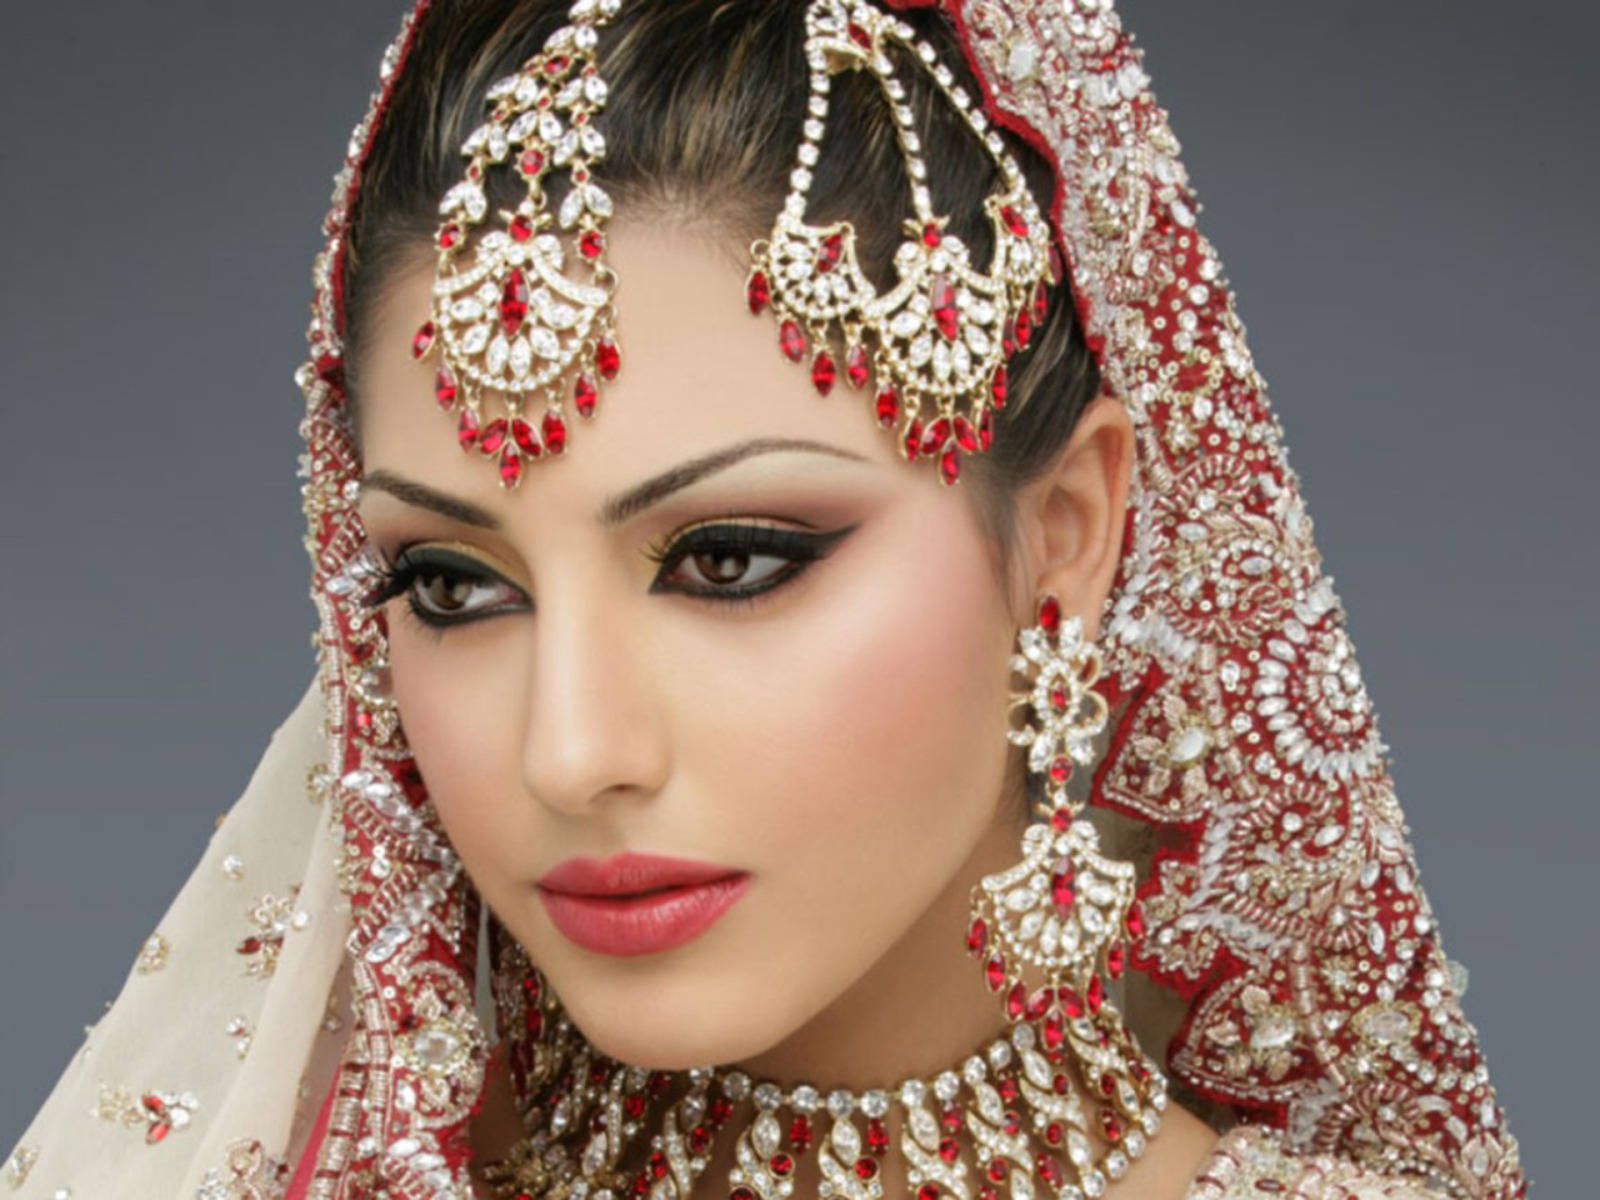 Caption: Radiant Bride In Elegance Wallpaper